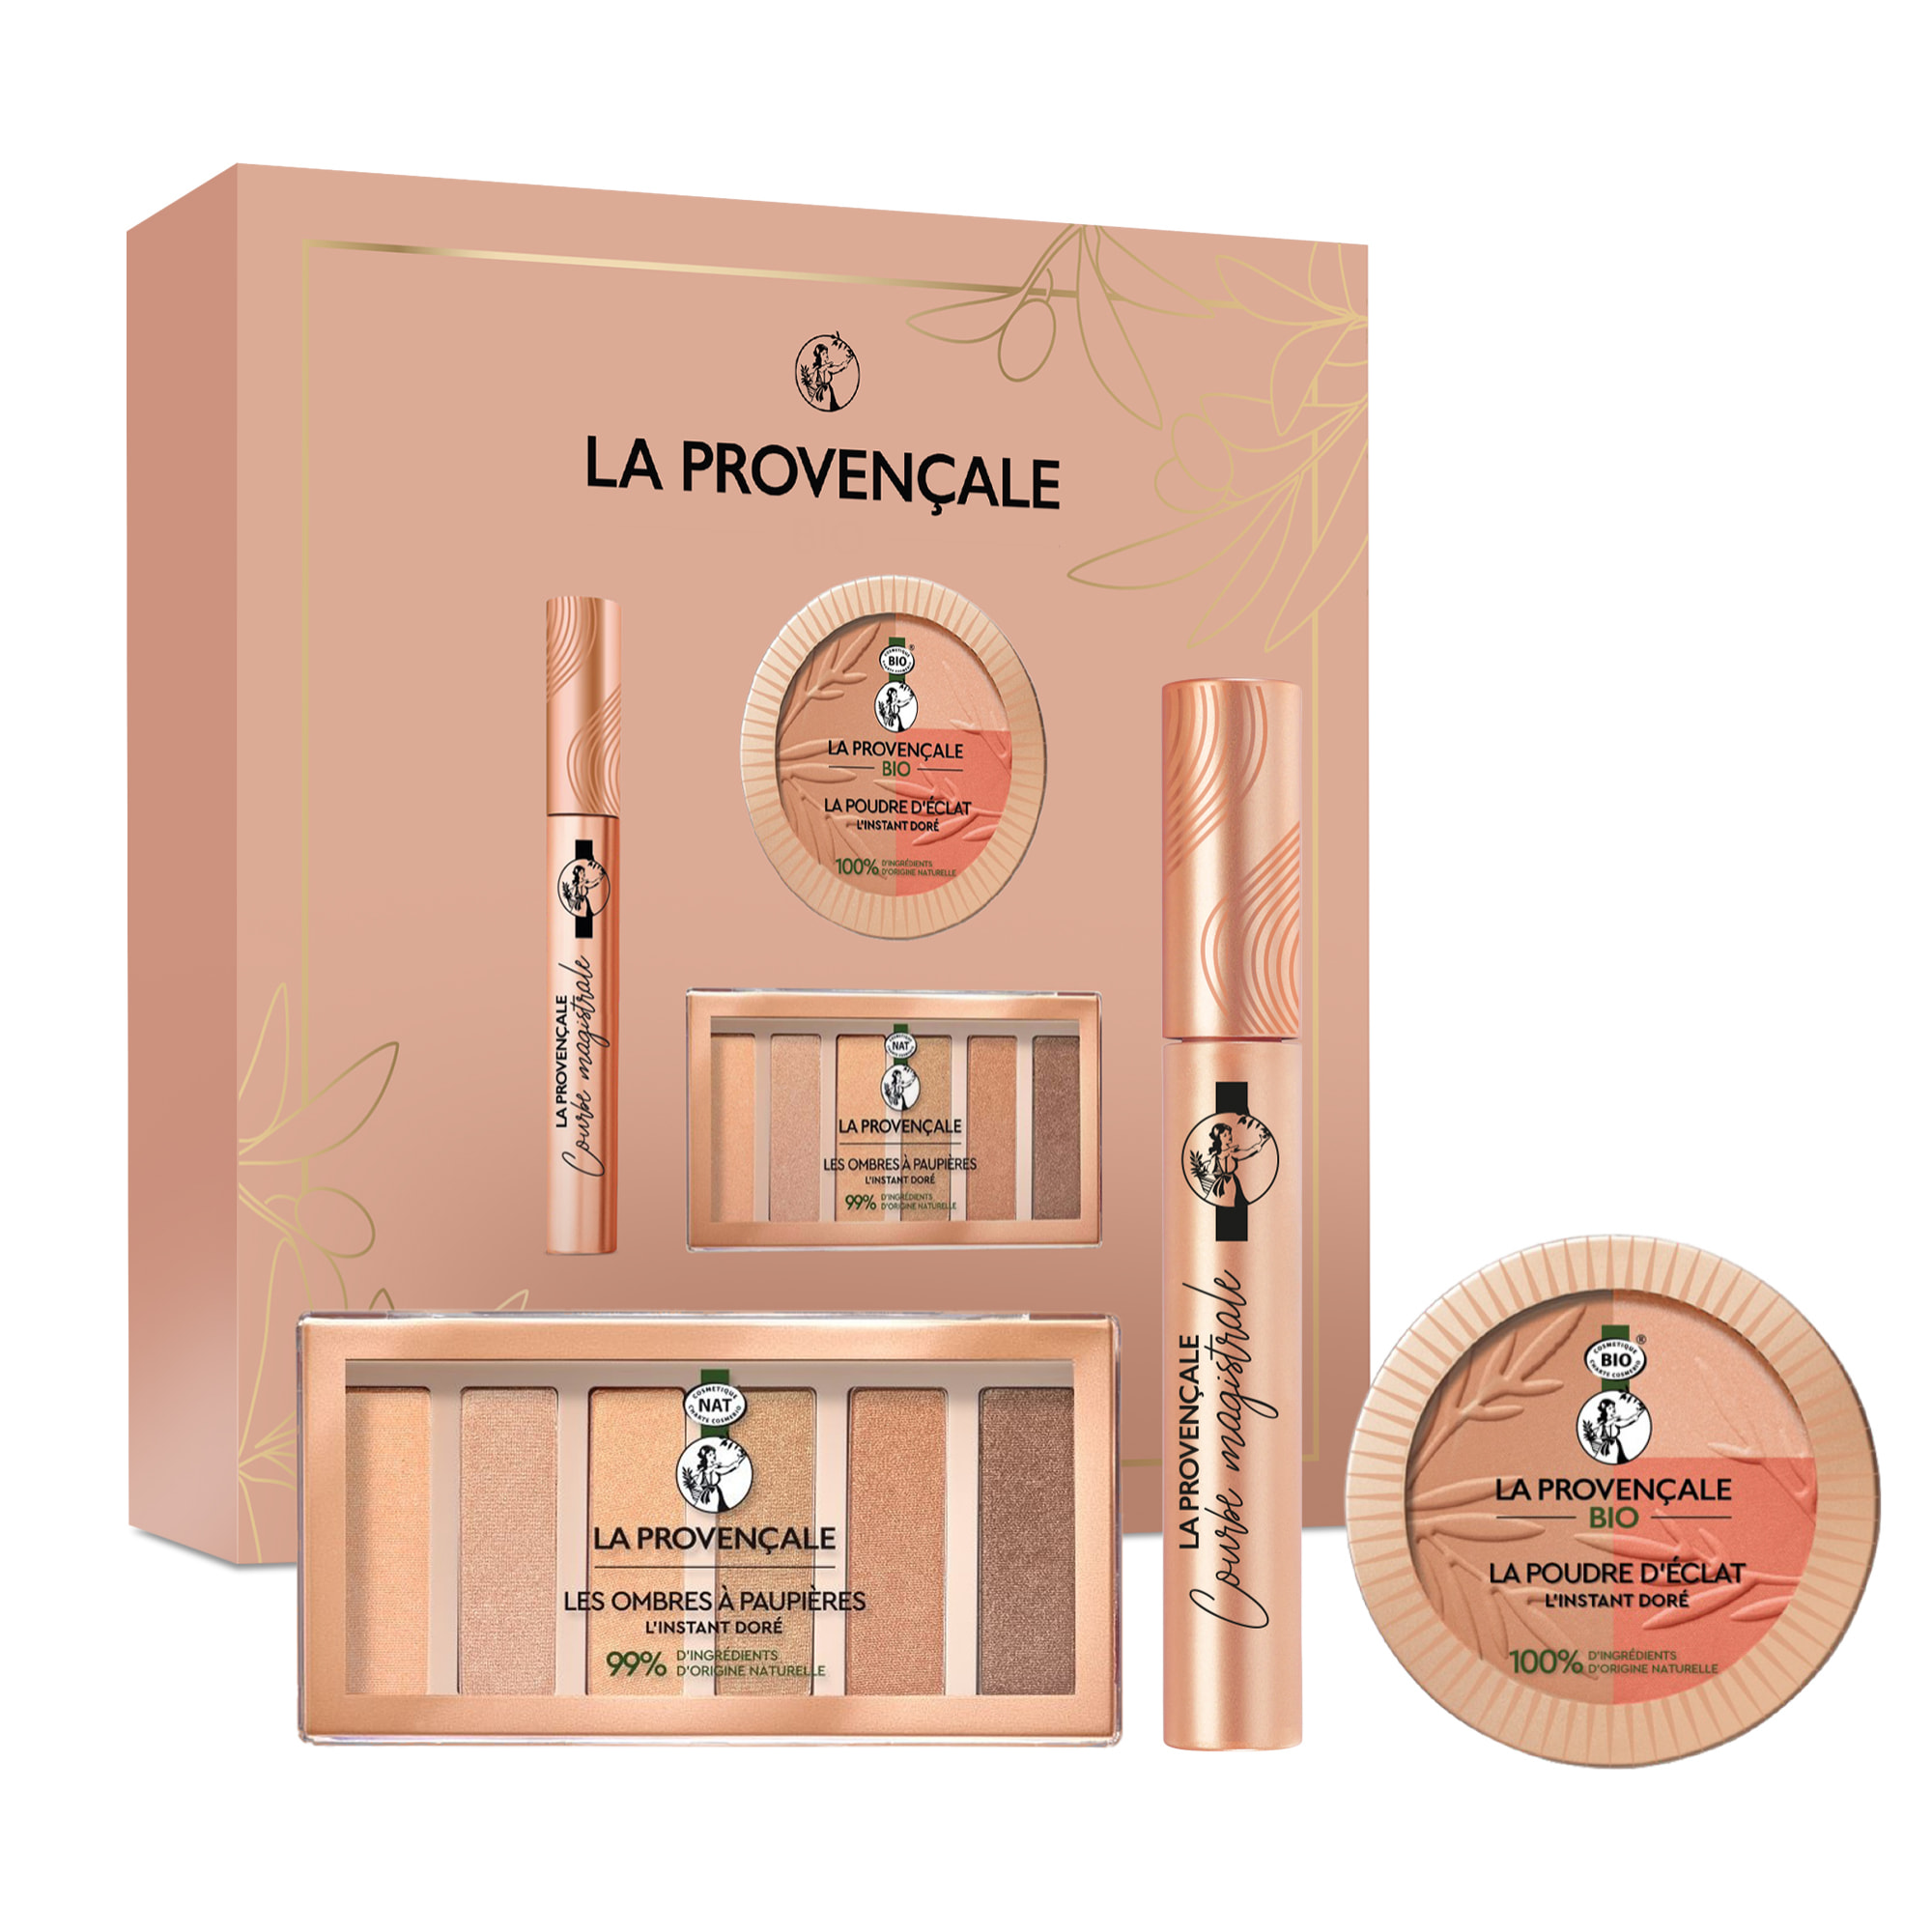 La Provençale Bio - La Provencale Le Coffret Maquillage L'Instant